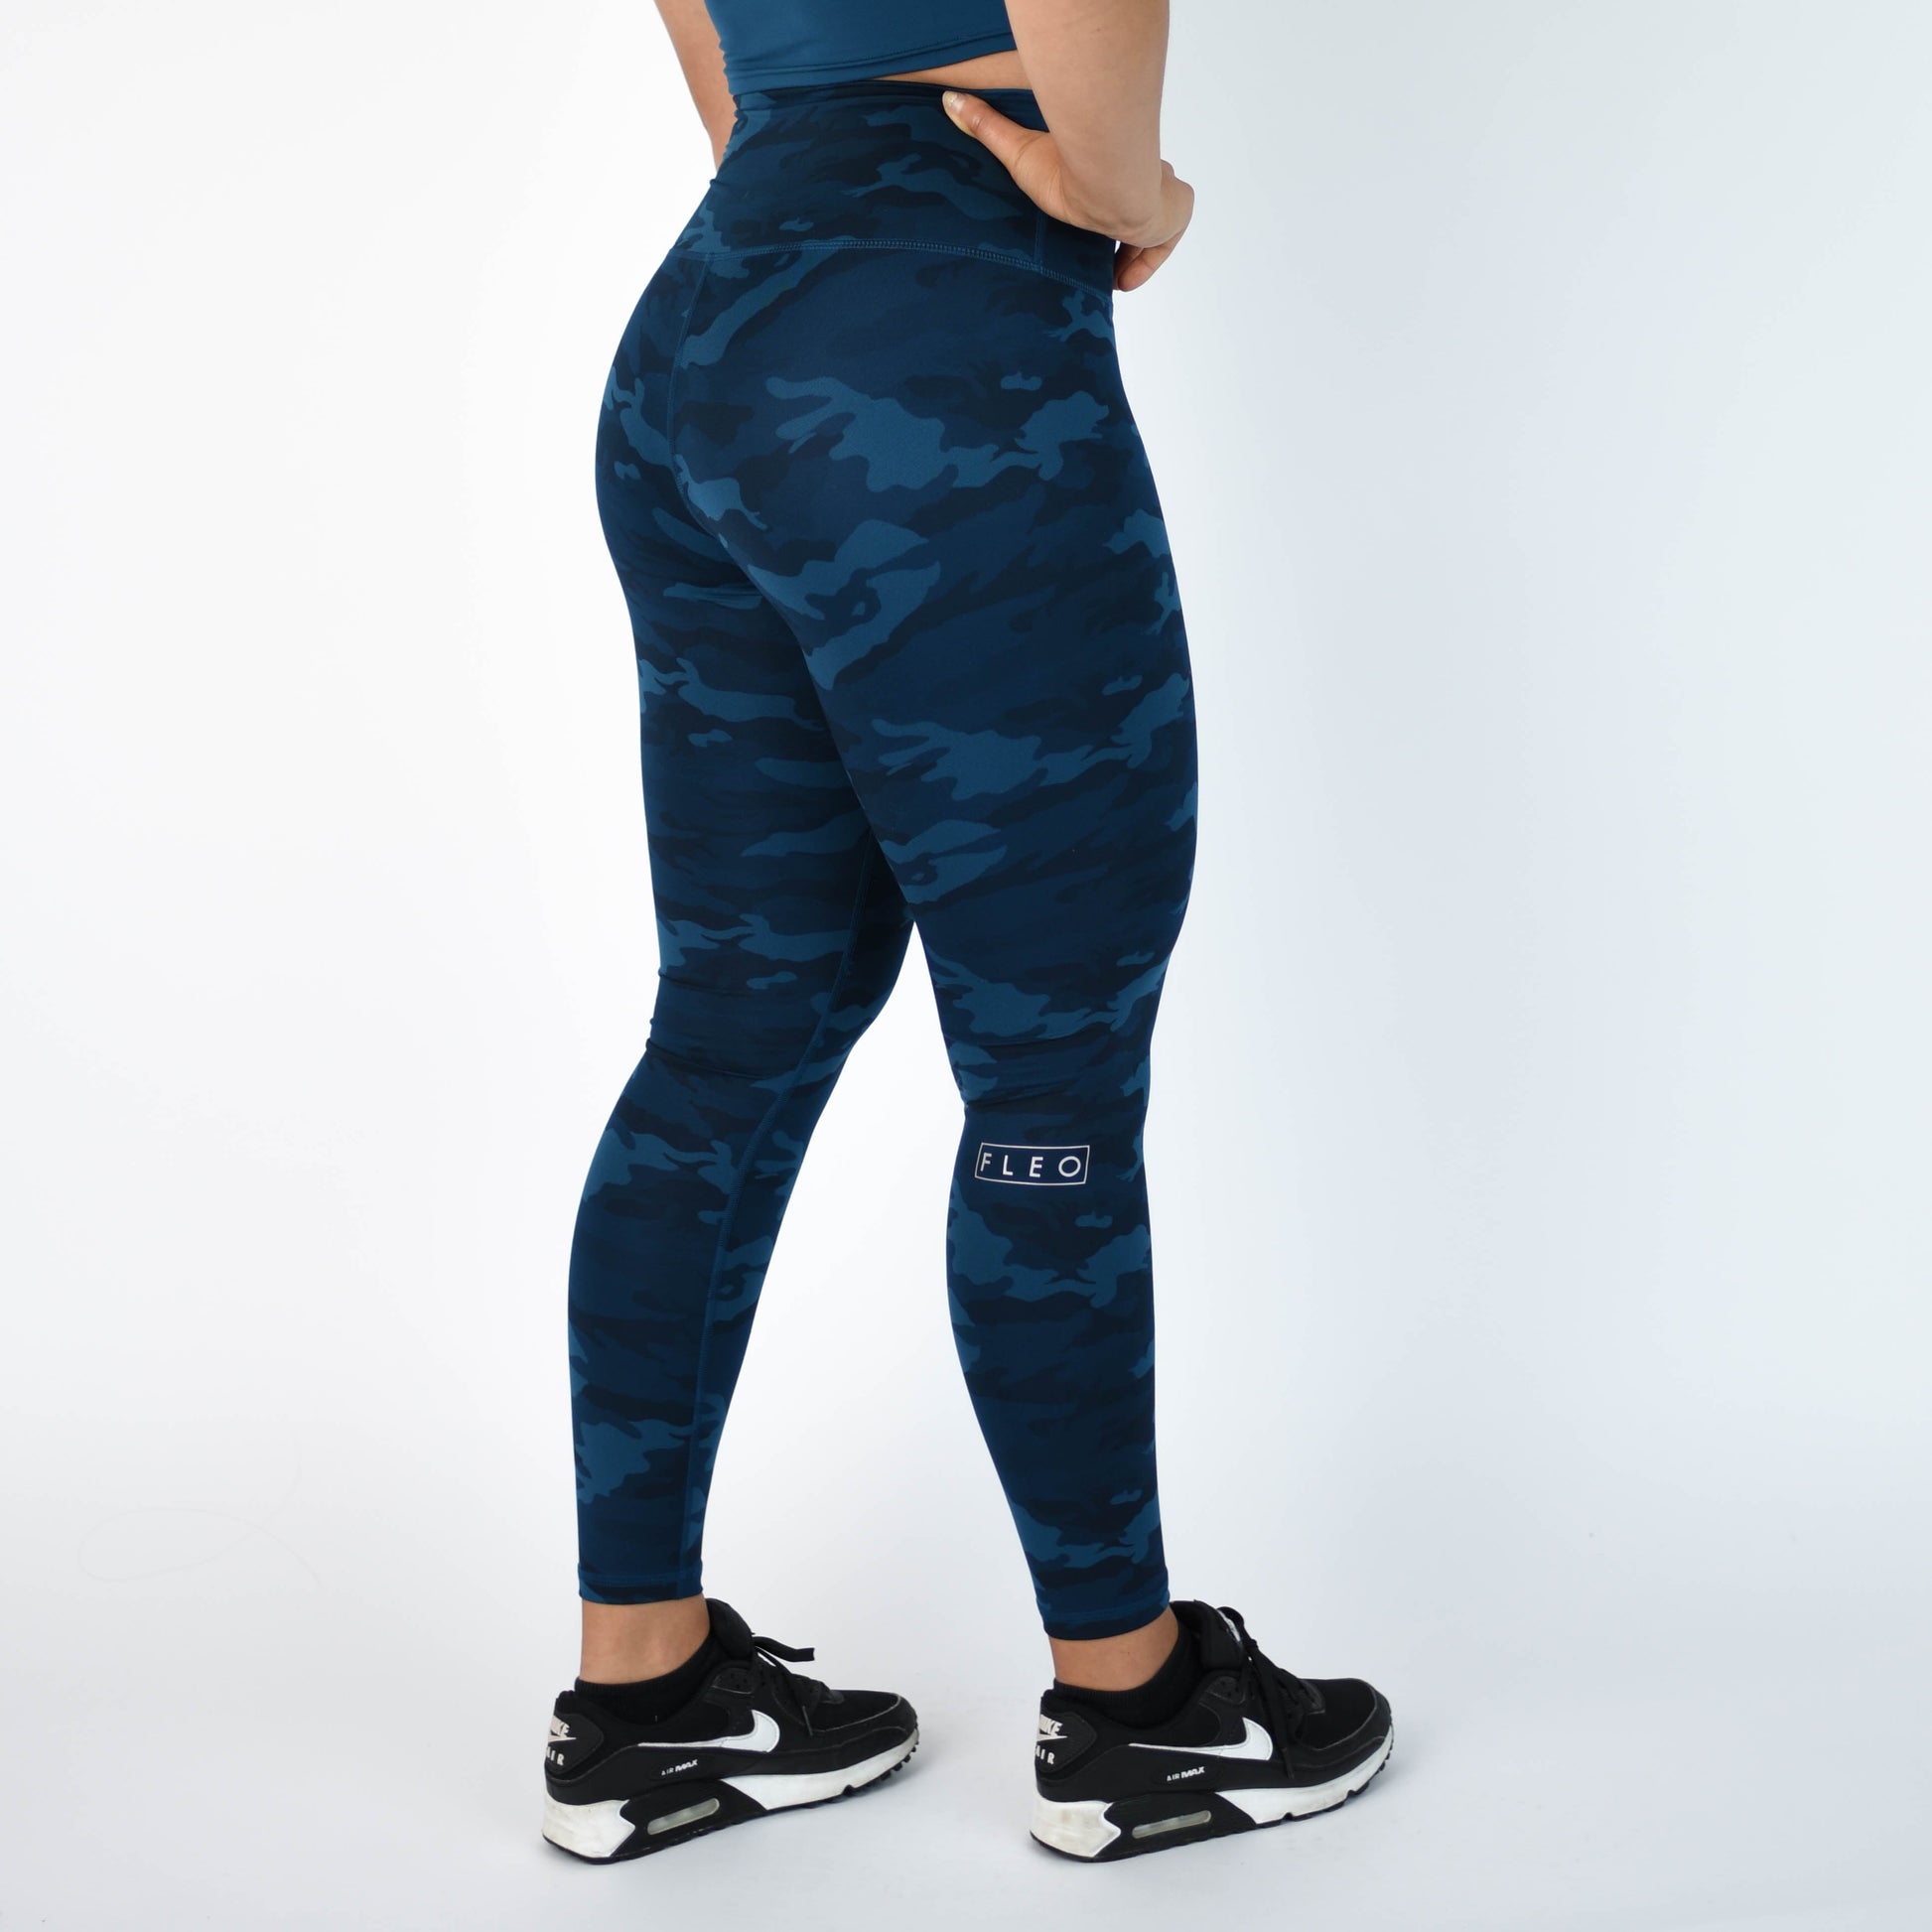 Felina Women's Athletic Pocket Legging 2 Pack (majolica Blue Storm